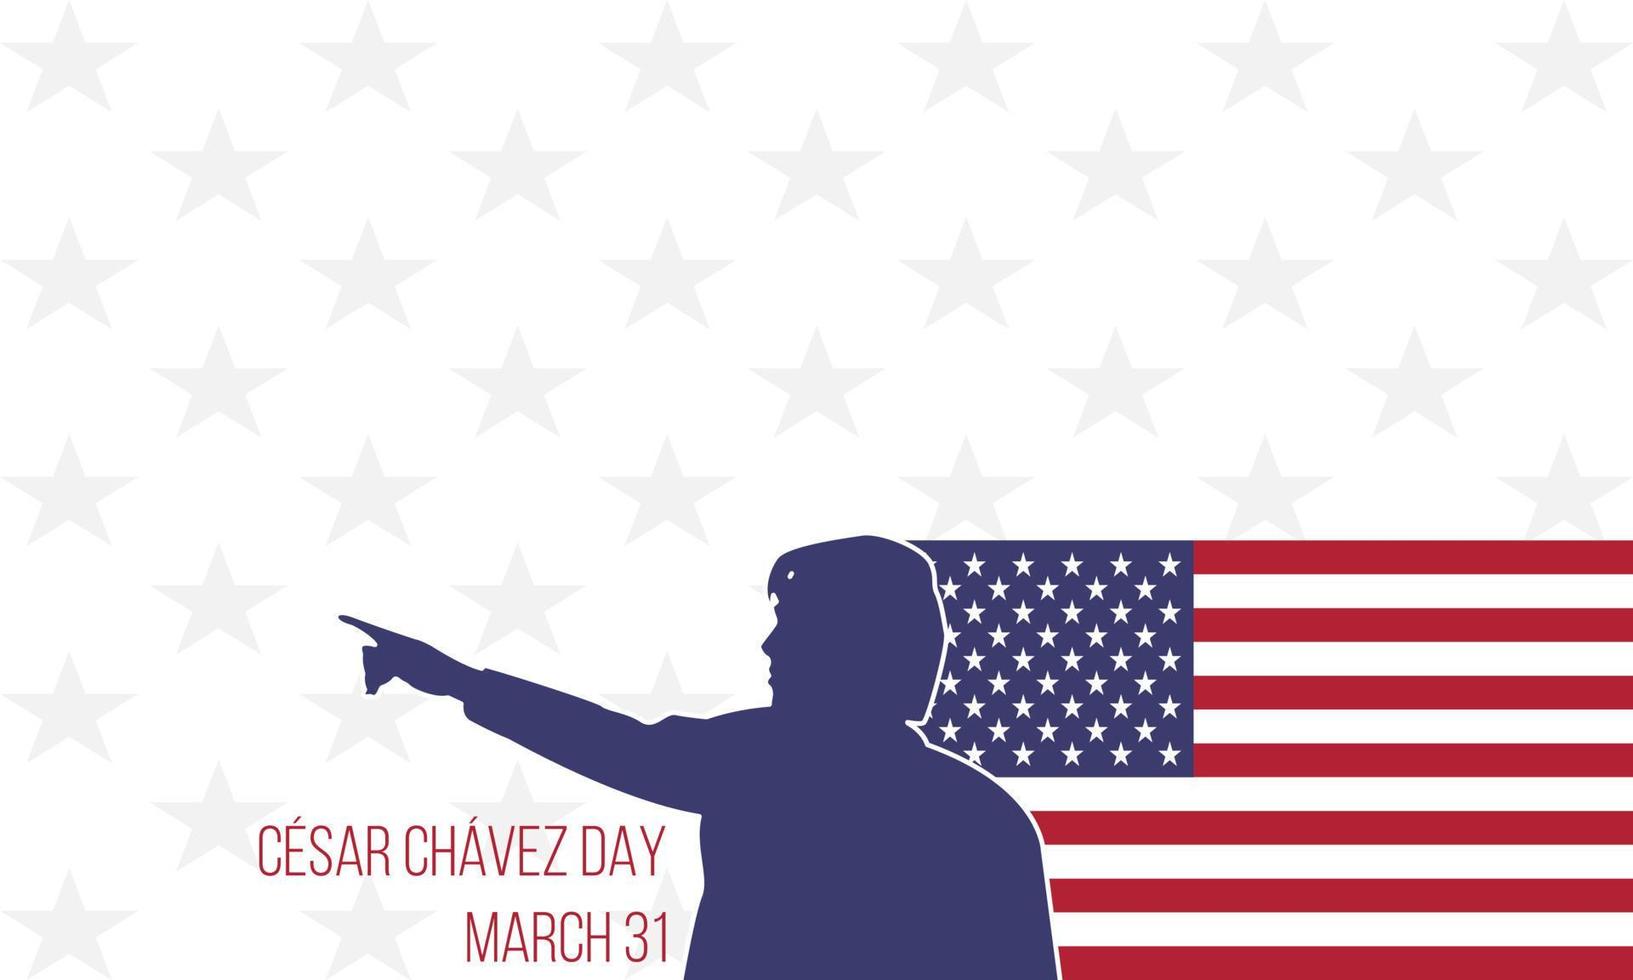 Cäsar Chavez Tag. flache artillustration mit usa-flaggenverzierung. der offizielle amerikanische nationalfeiertag, der jährlich gefeiert wird. geeignet für Poster, Banner, Hintergrund, Hintergrund. vektor